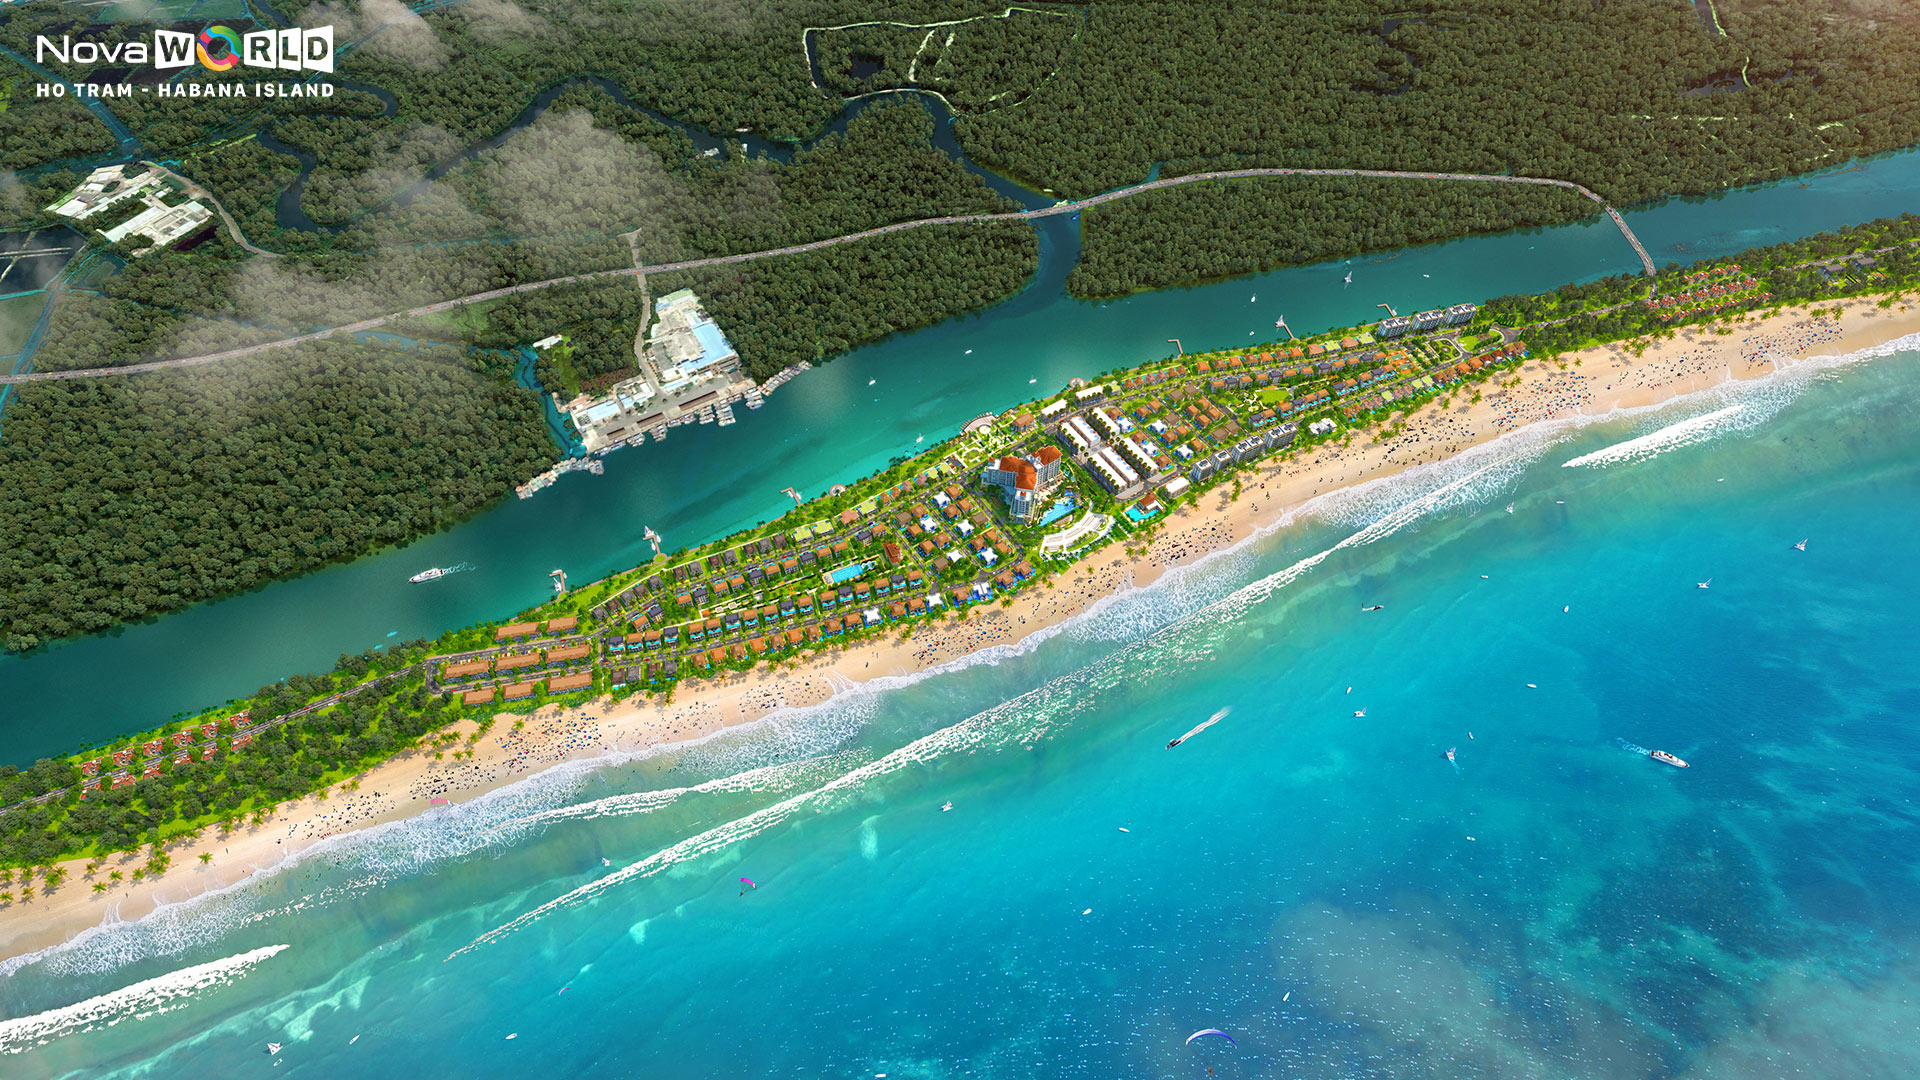 Toàn cảnh dự án habana island hồ tràm skycentral